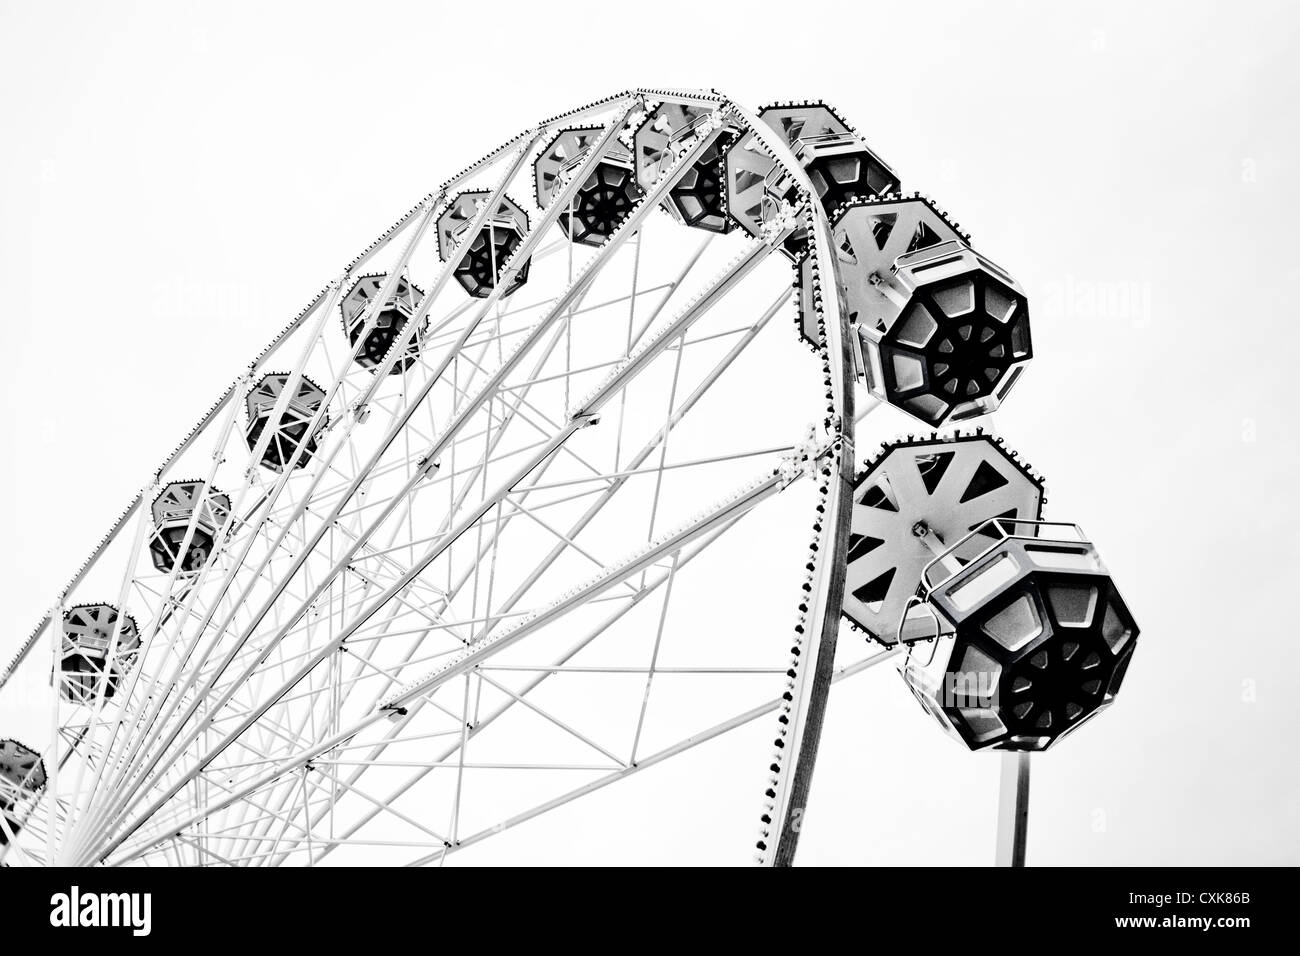 Riesenrad in klassischem Schwarz-Weiß Bild machte am 3. Oktober in der Stadt Leiden. Stockfoto